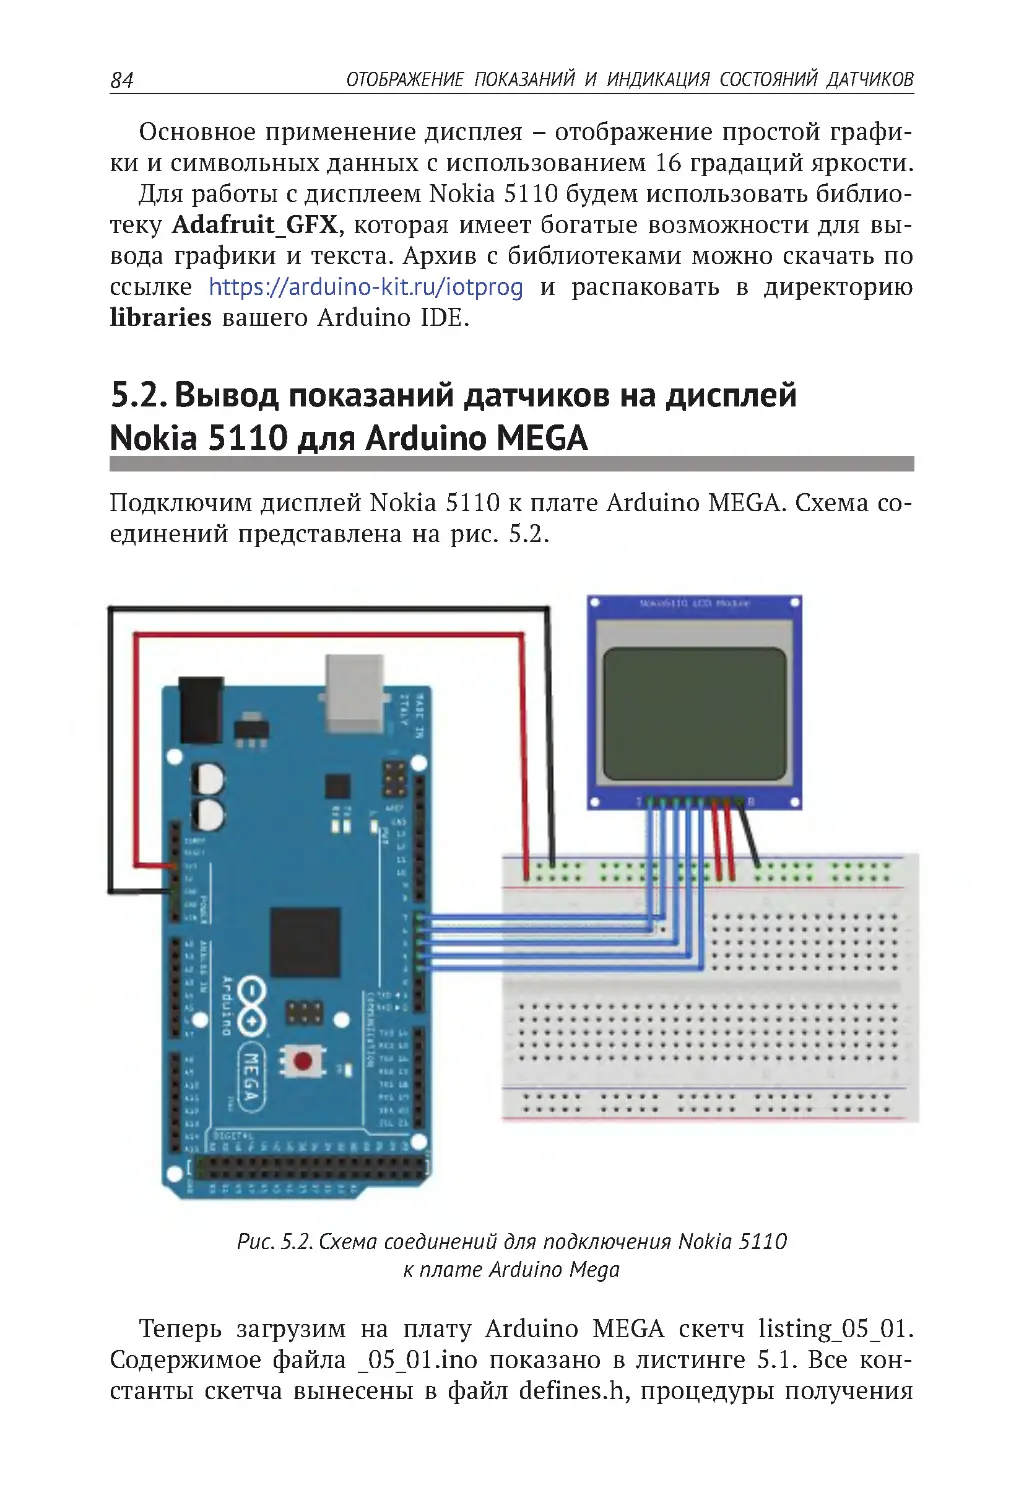 5.2. Вывод показаний датчиков на дисплей Nokia 5110 для Arduino MEGA